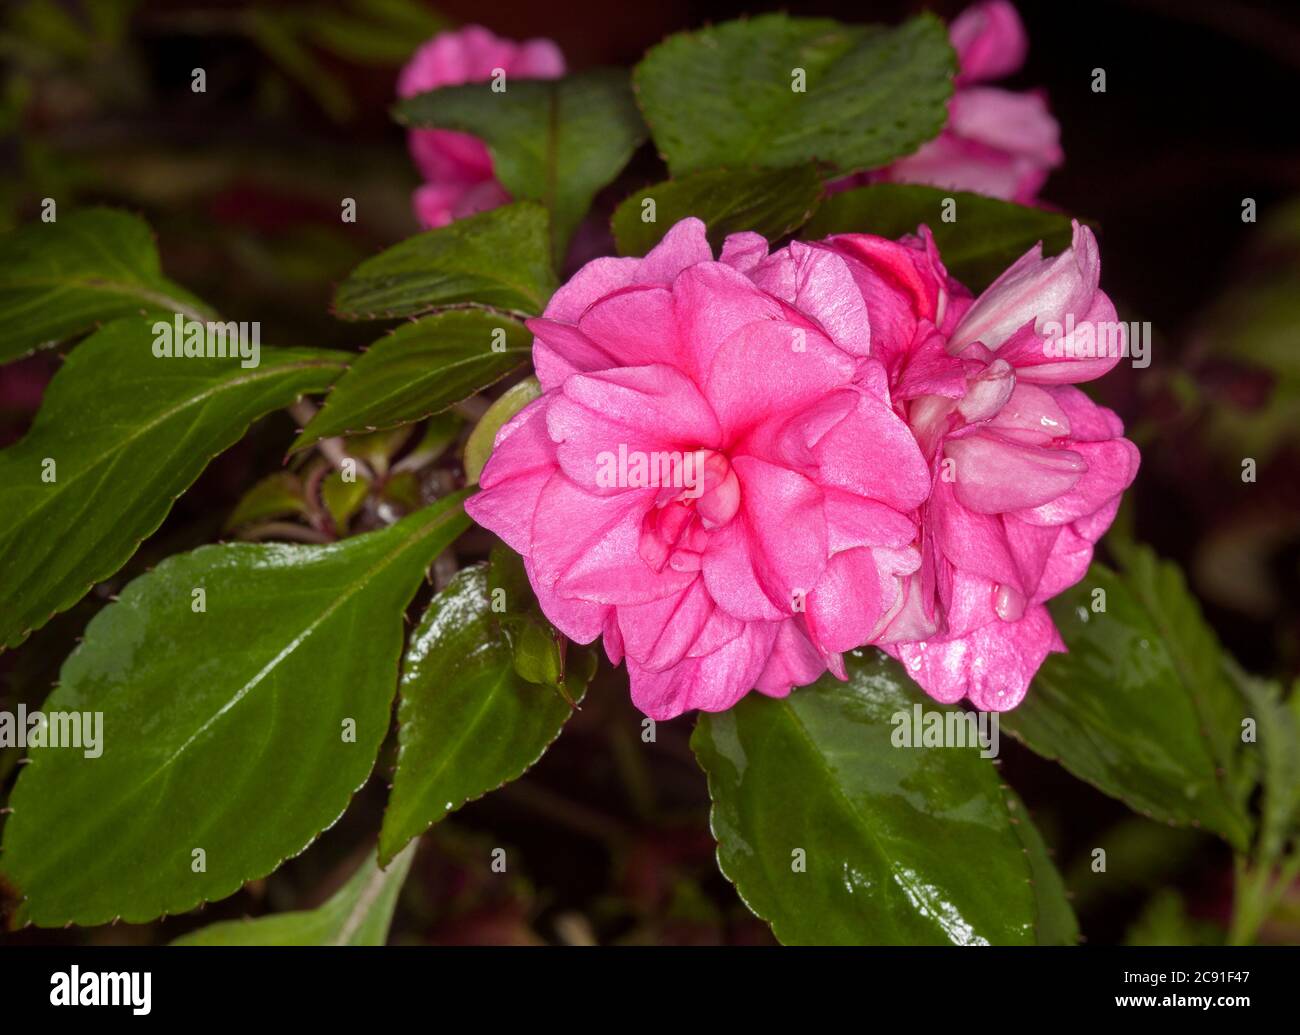 Fiori rosa vividi contro foglie verdi scure di Impatiens walleriana, una pianta che ama l'ombra in Australia Foto Stock